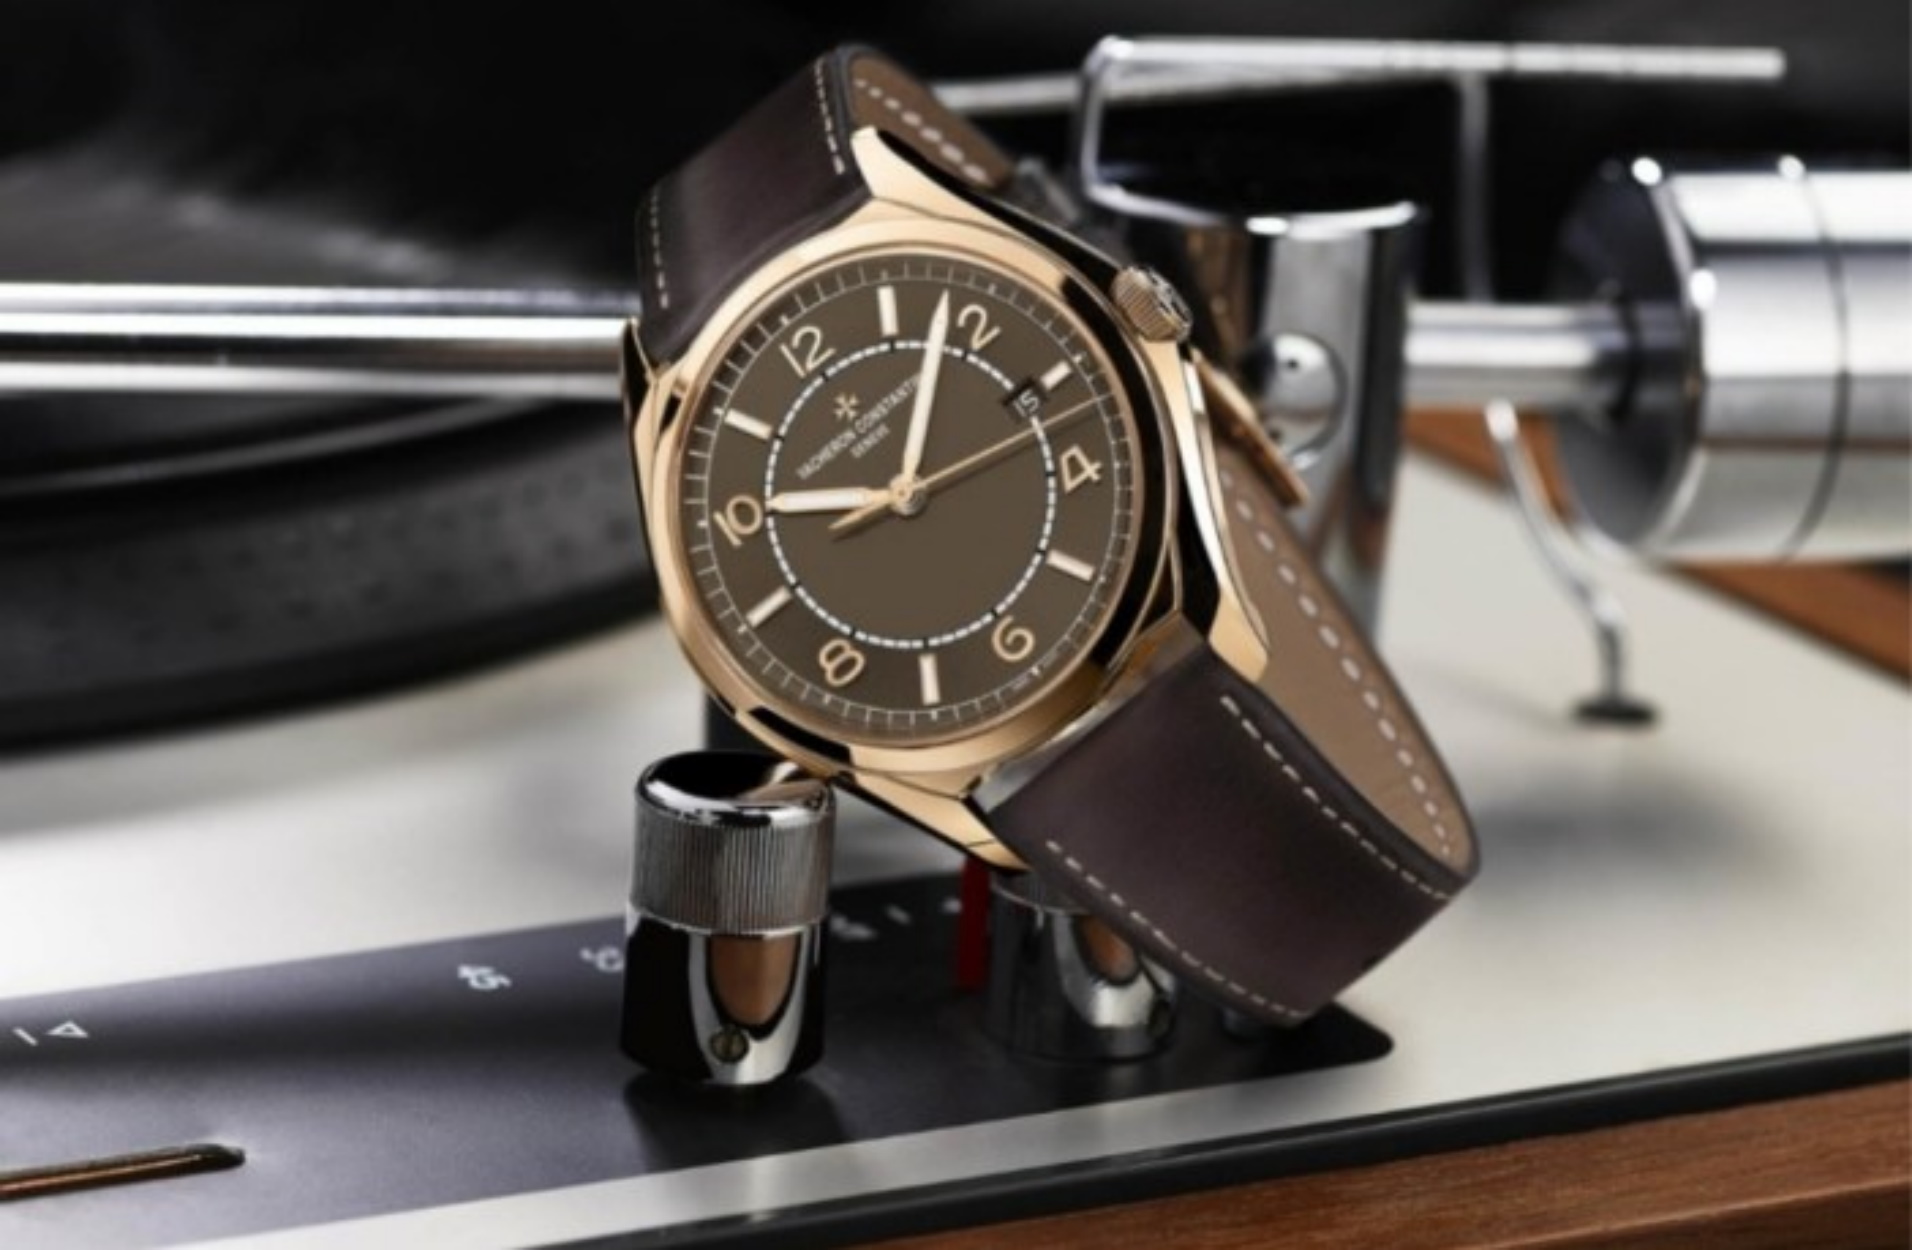 Δύο από τα πιο όμορφα ρολόγια που παρουσίασε ο Vacheron Constantin το 2020